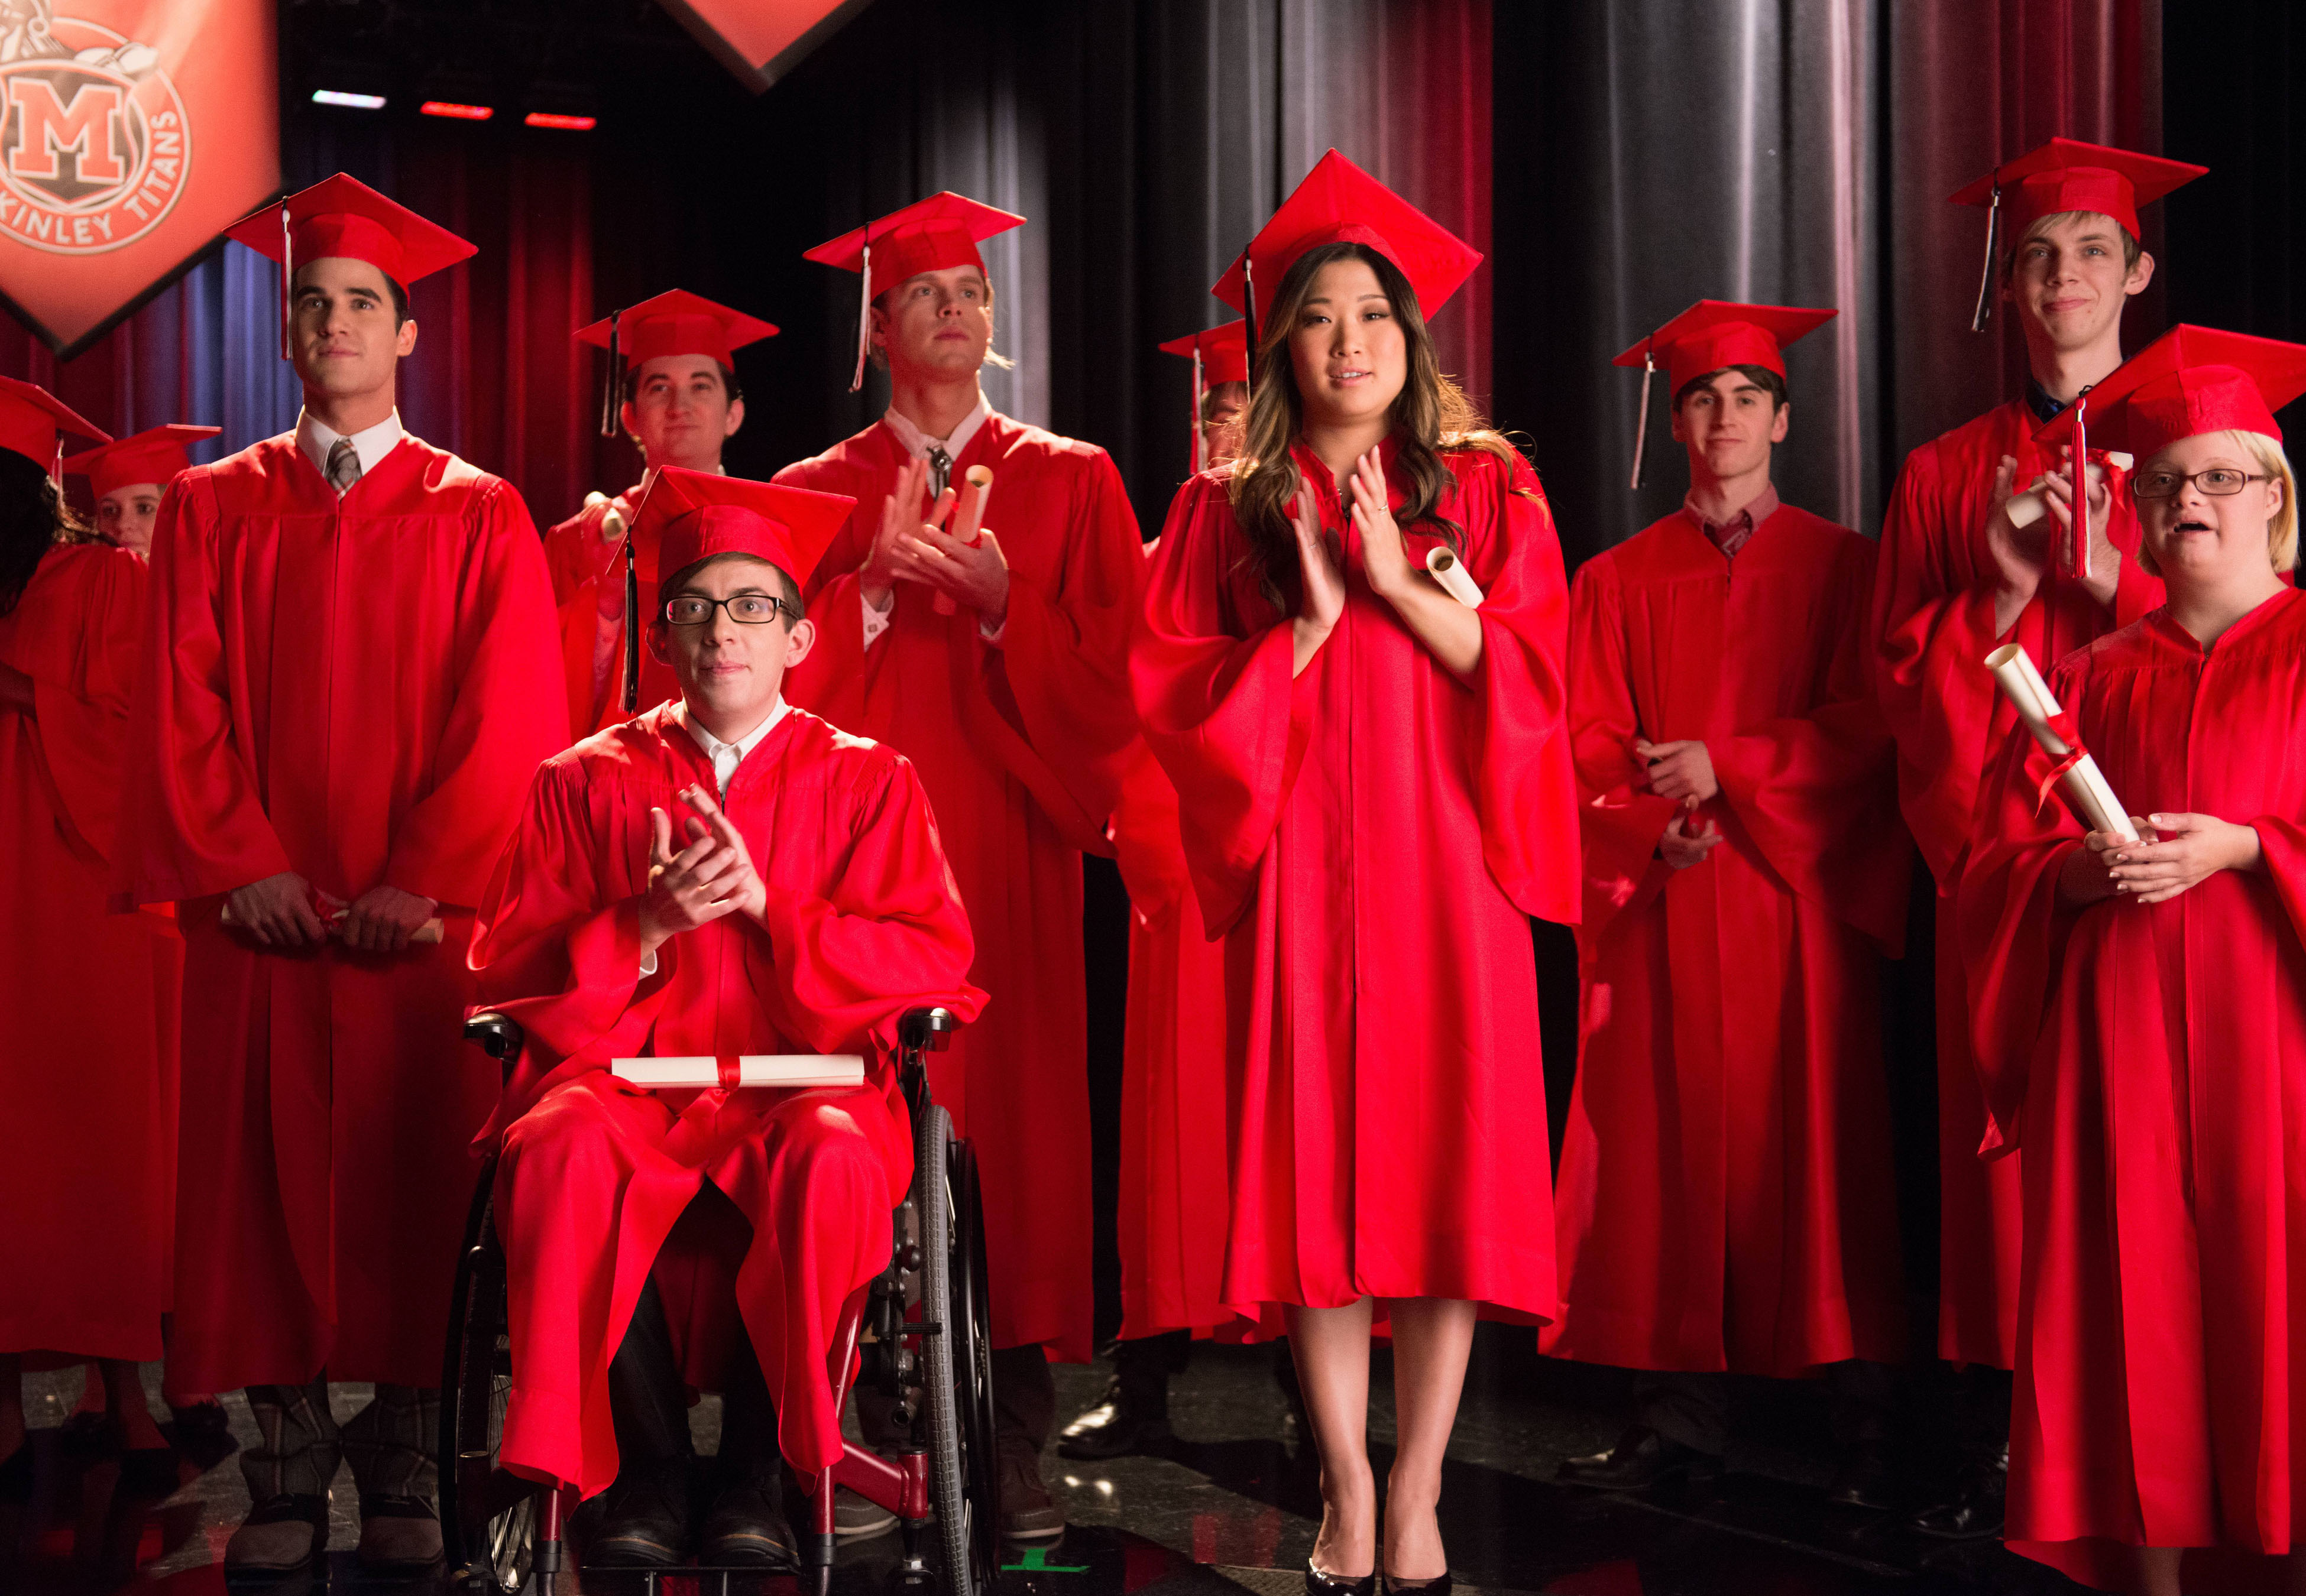 Chord Overstreet in Glee Season 5